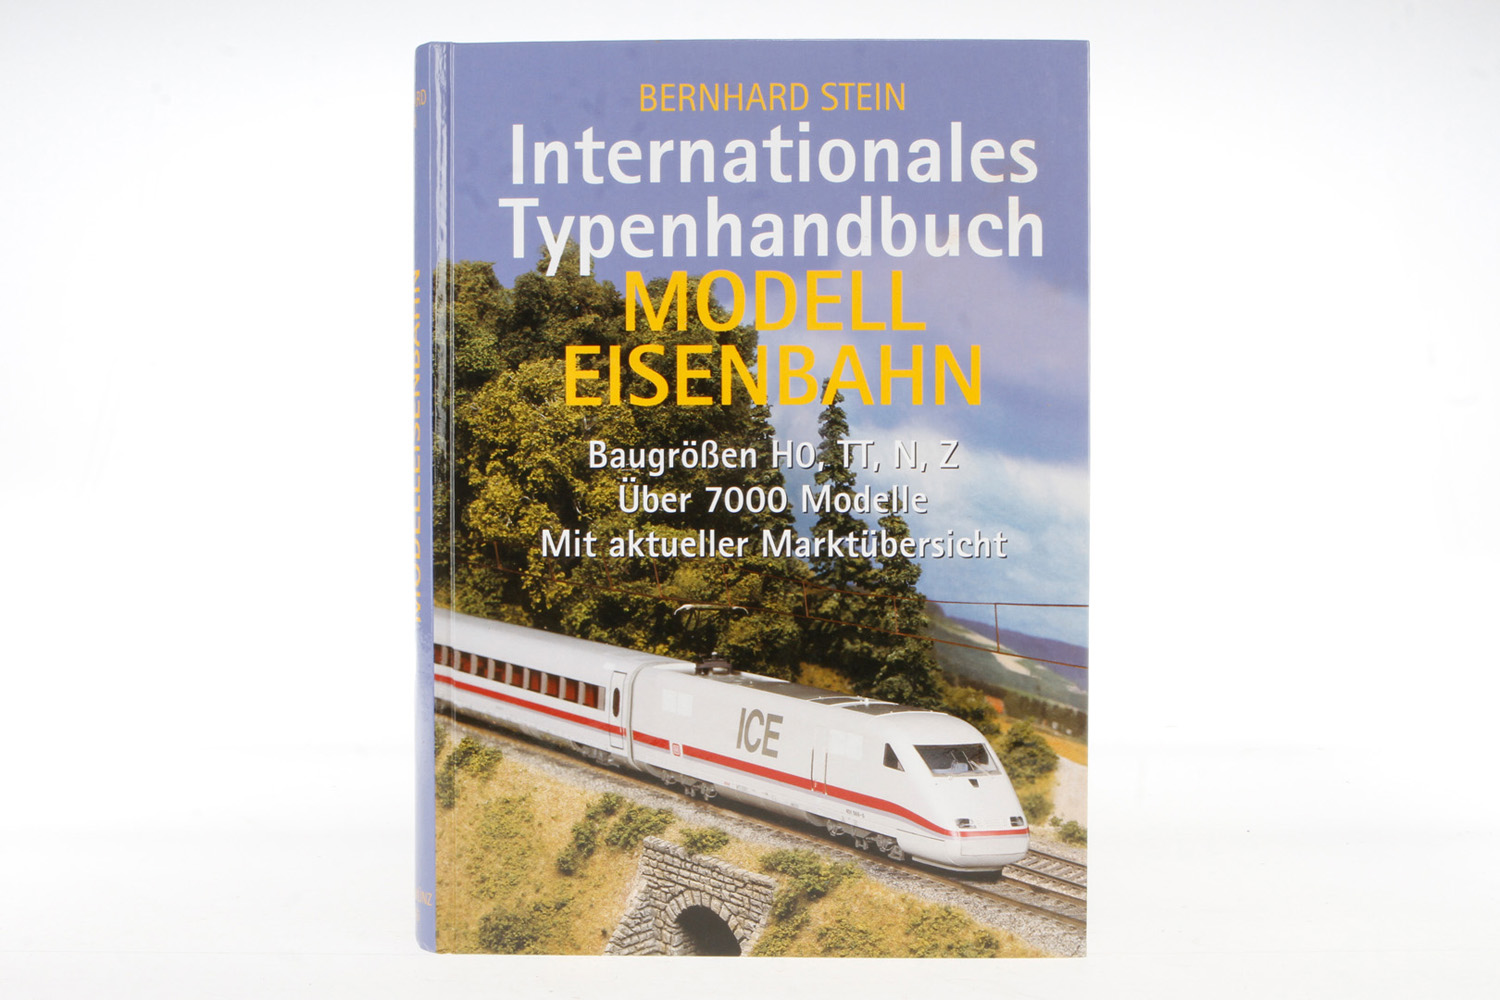 Buch "Internationales Typenhandbuch Modelleisenbahn", 1998, farbig bebildert, leichte